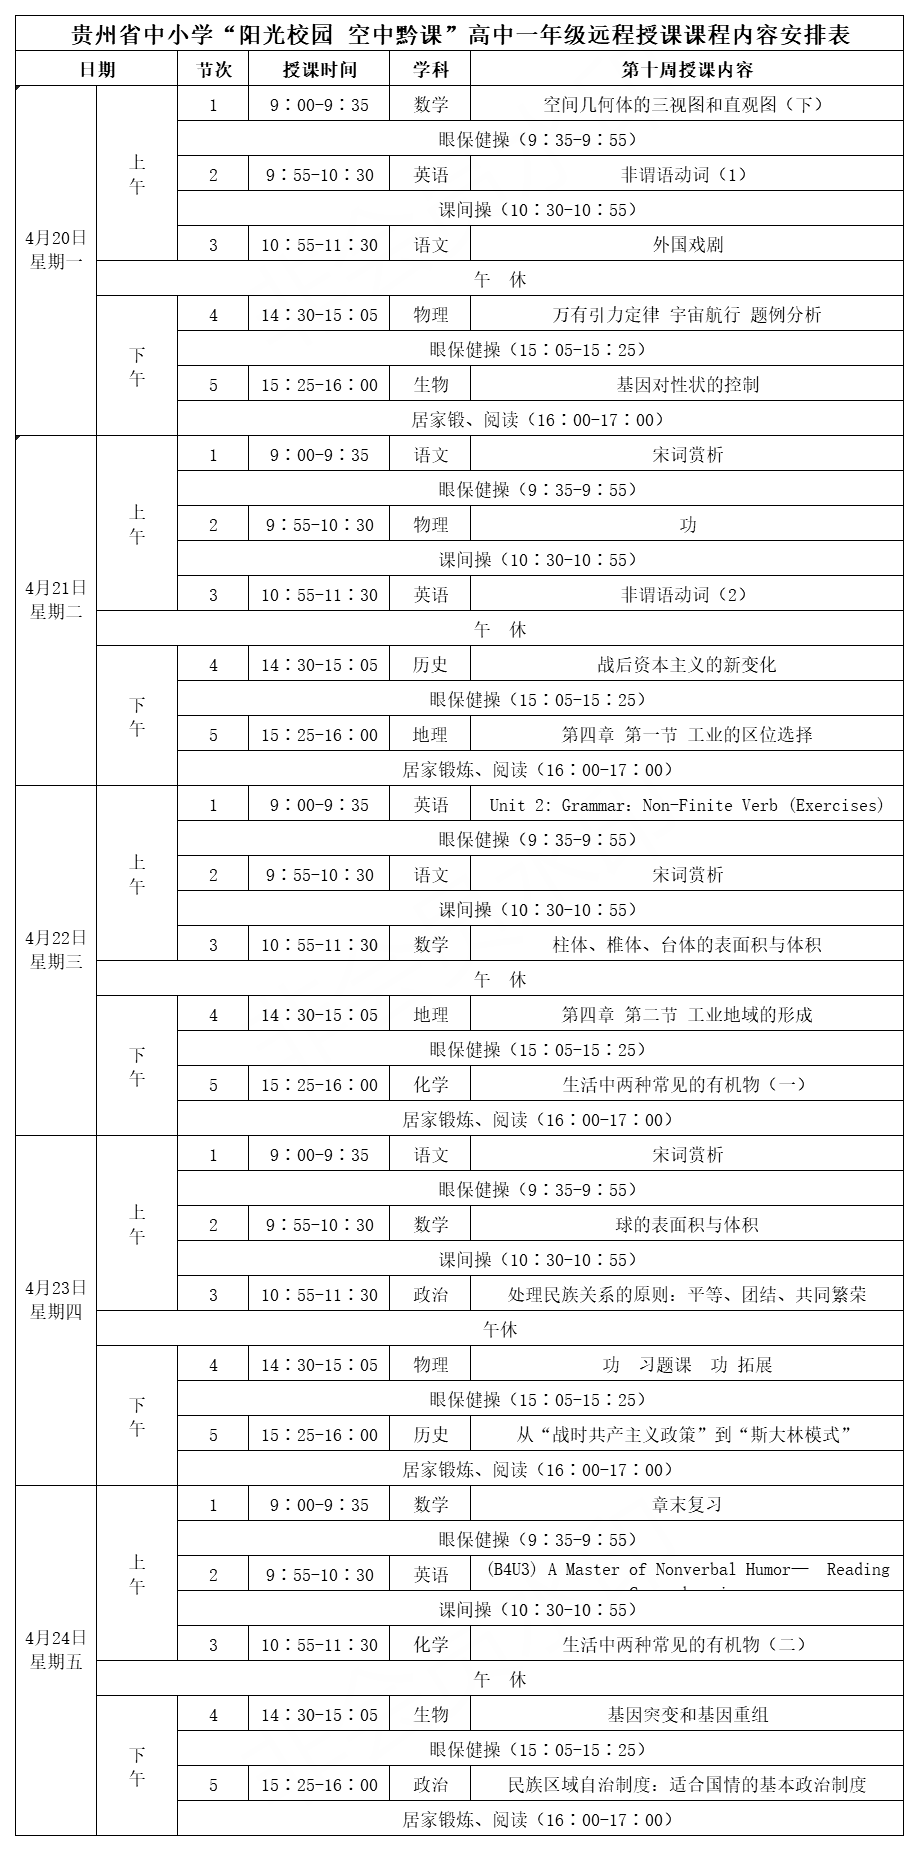 贵州中小学“空中课堂”课程表完整版公布（4月20日4